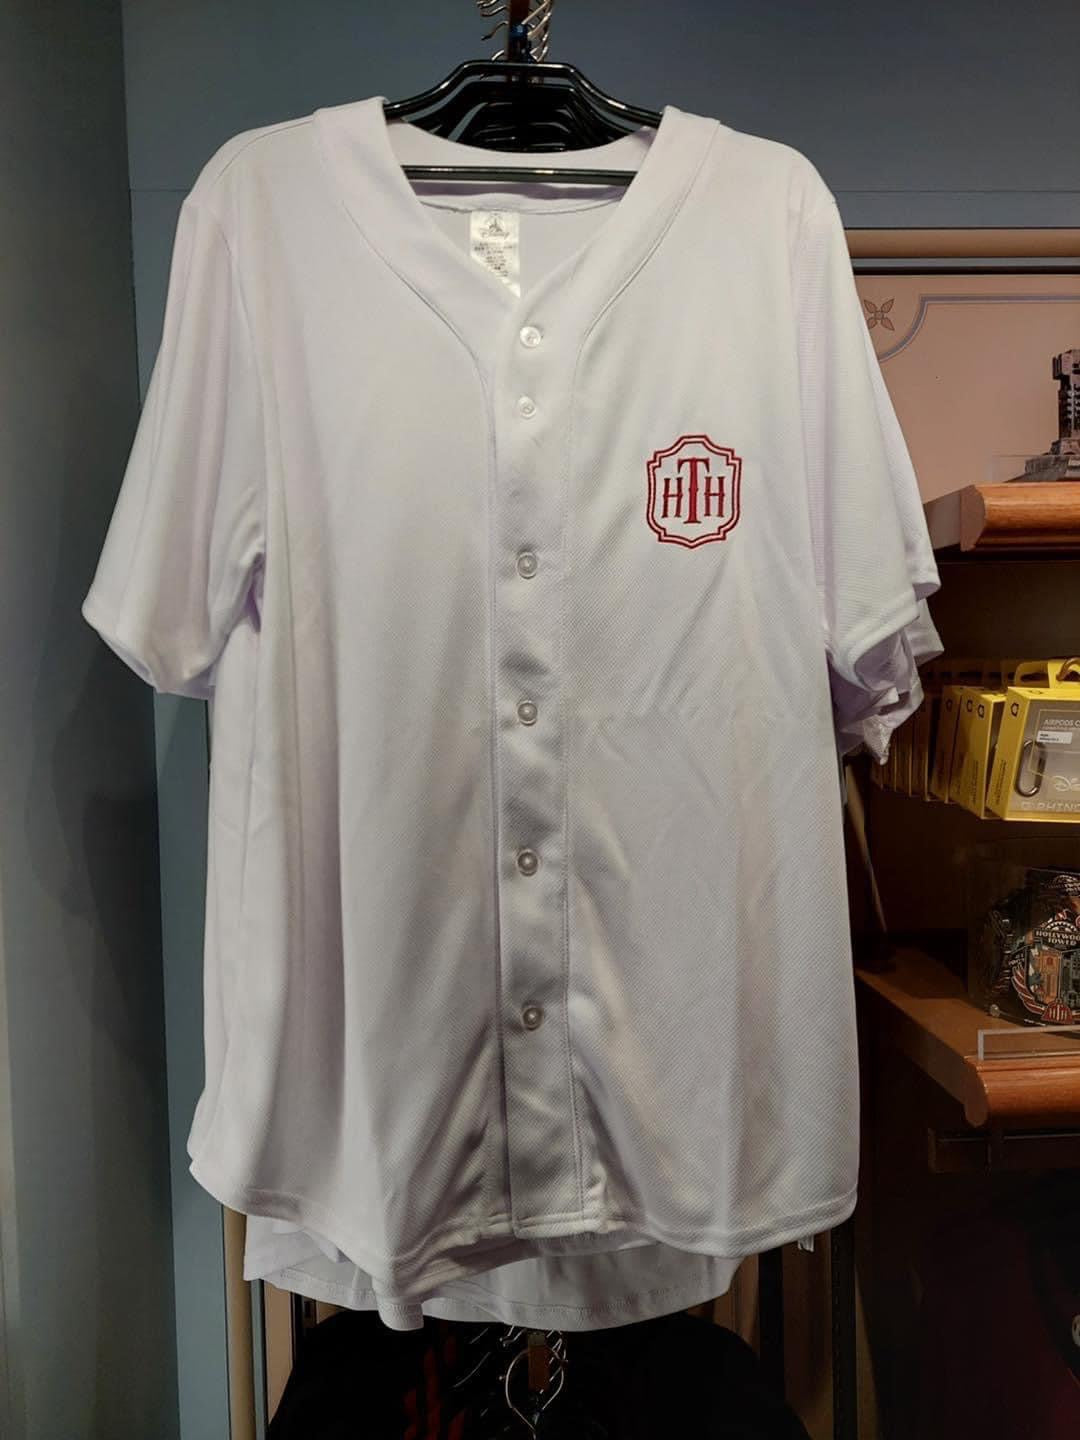 Hollywood Tower Hotel Baseball shirt